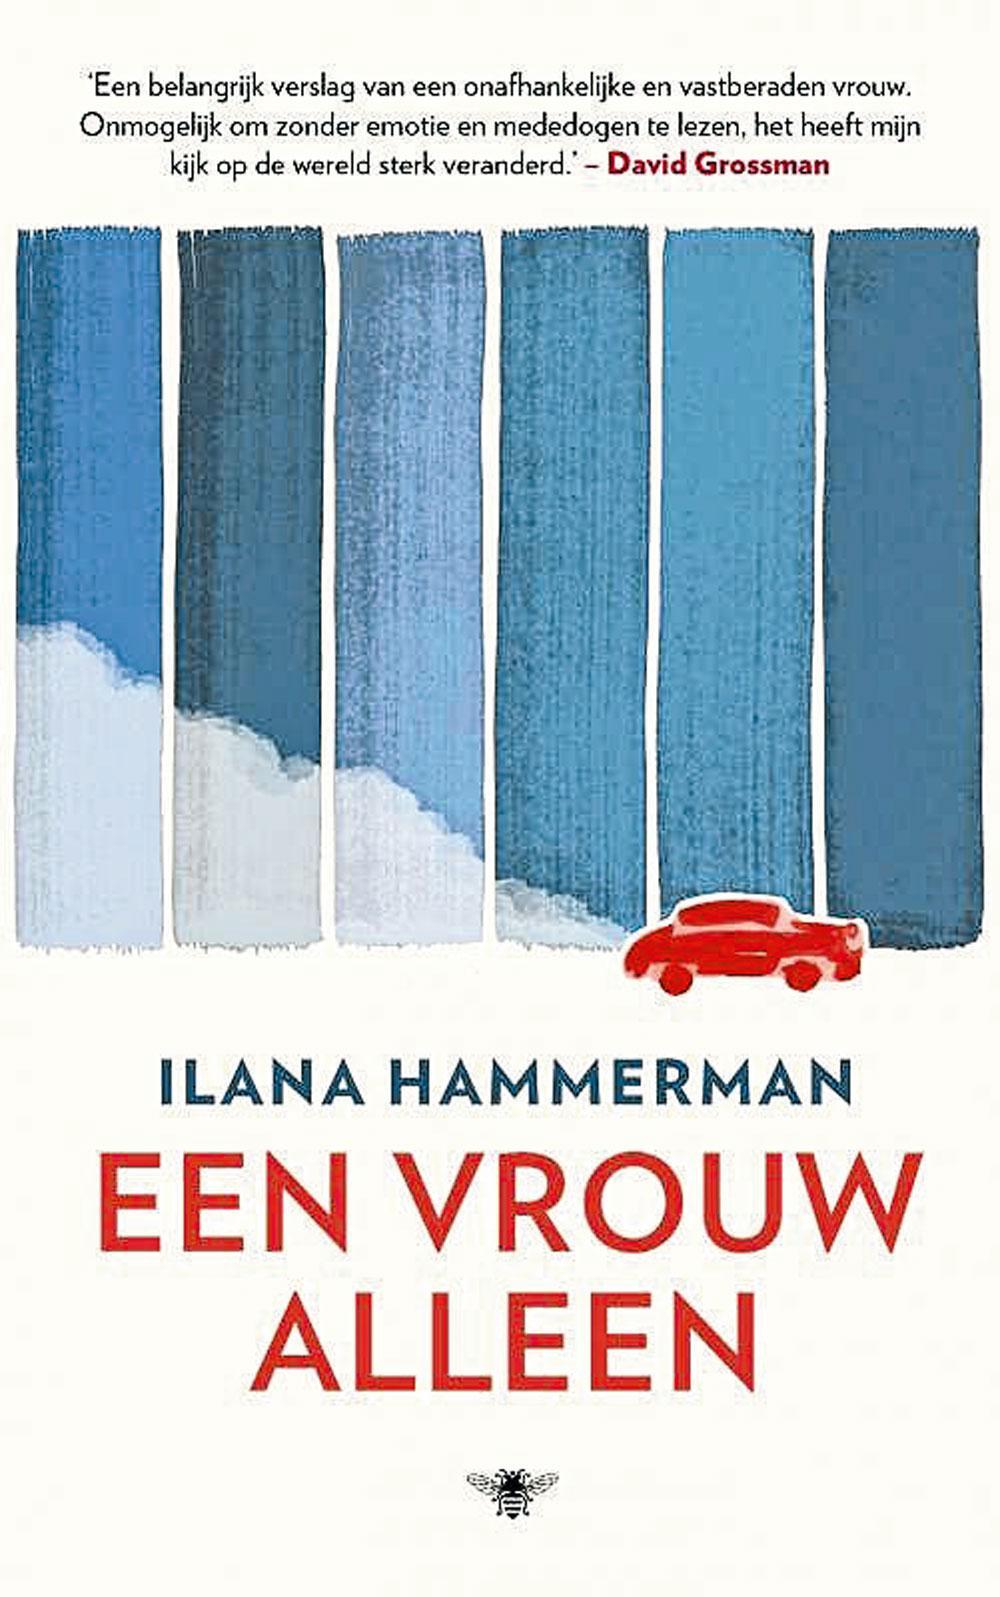 Ilana Hammerman, Een vrouw alleen, De Bezige Bij, 320 blz., 19,99 euro.